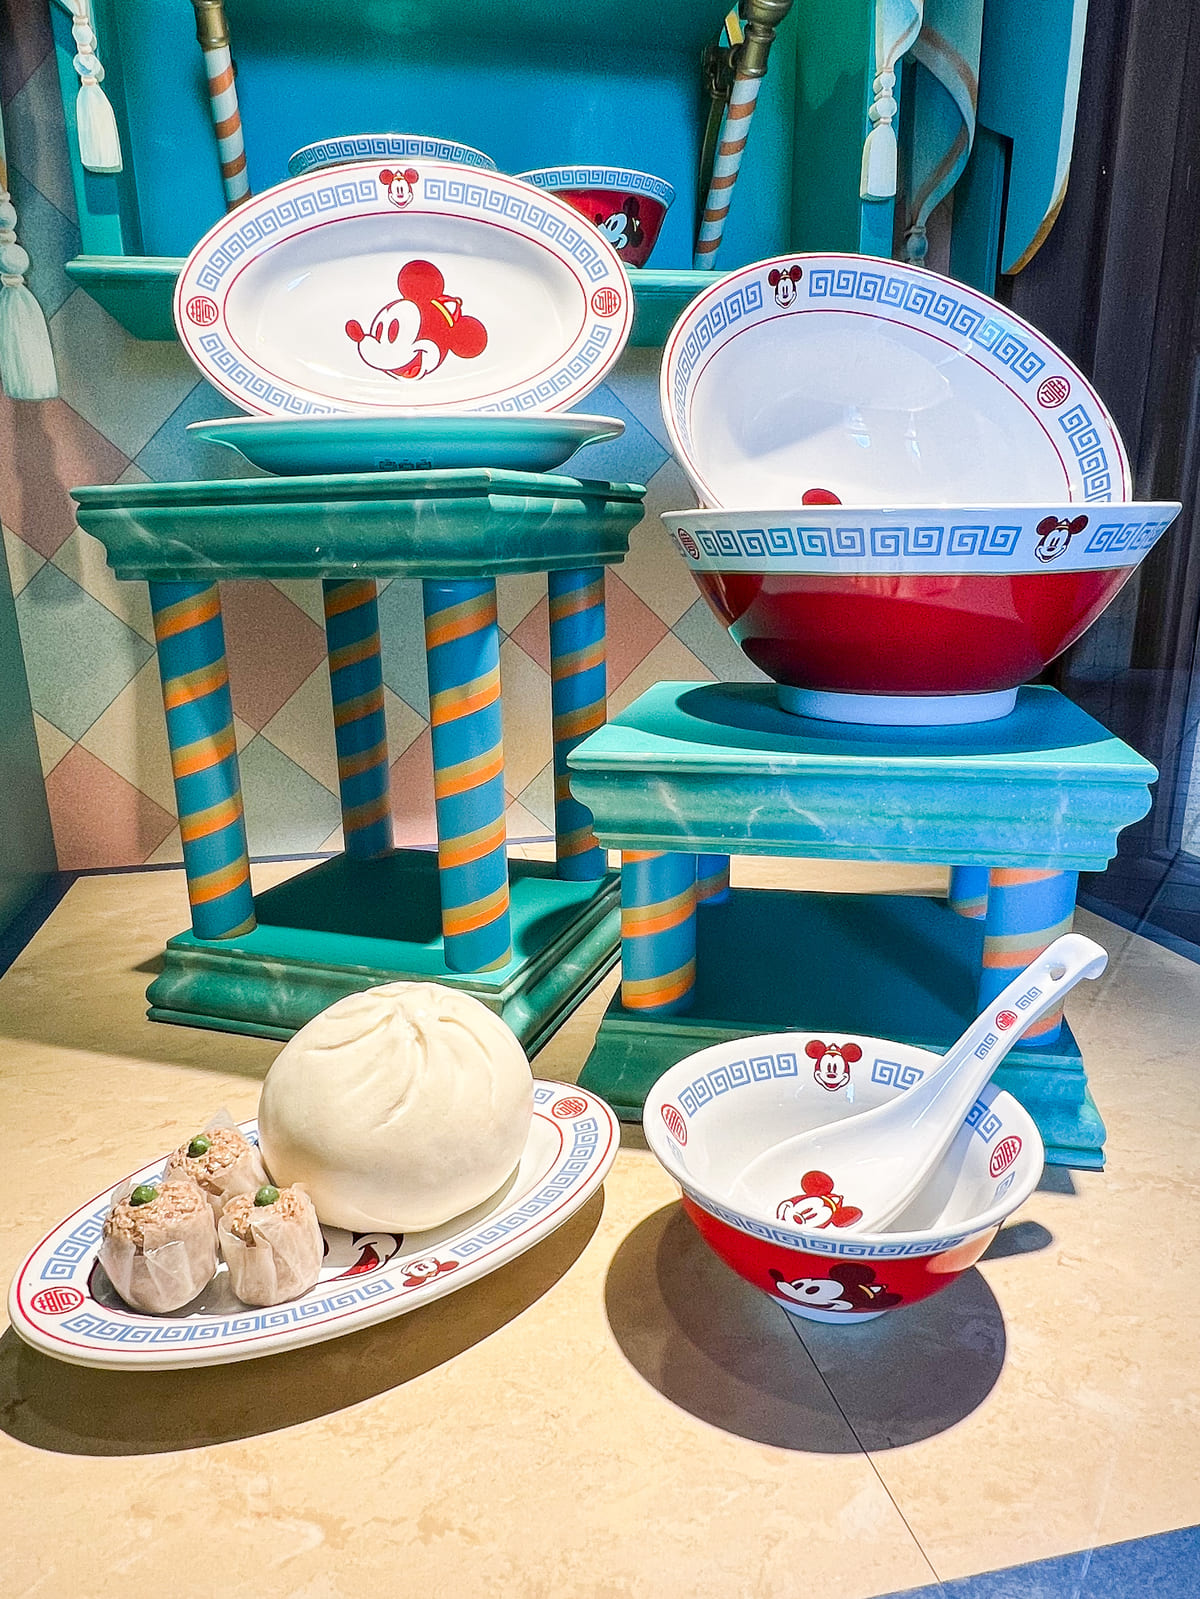 中華帽子のミッキーがかわいい 東京ディズニーランド 中華食器 お土産